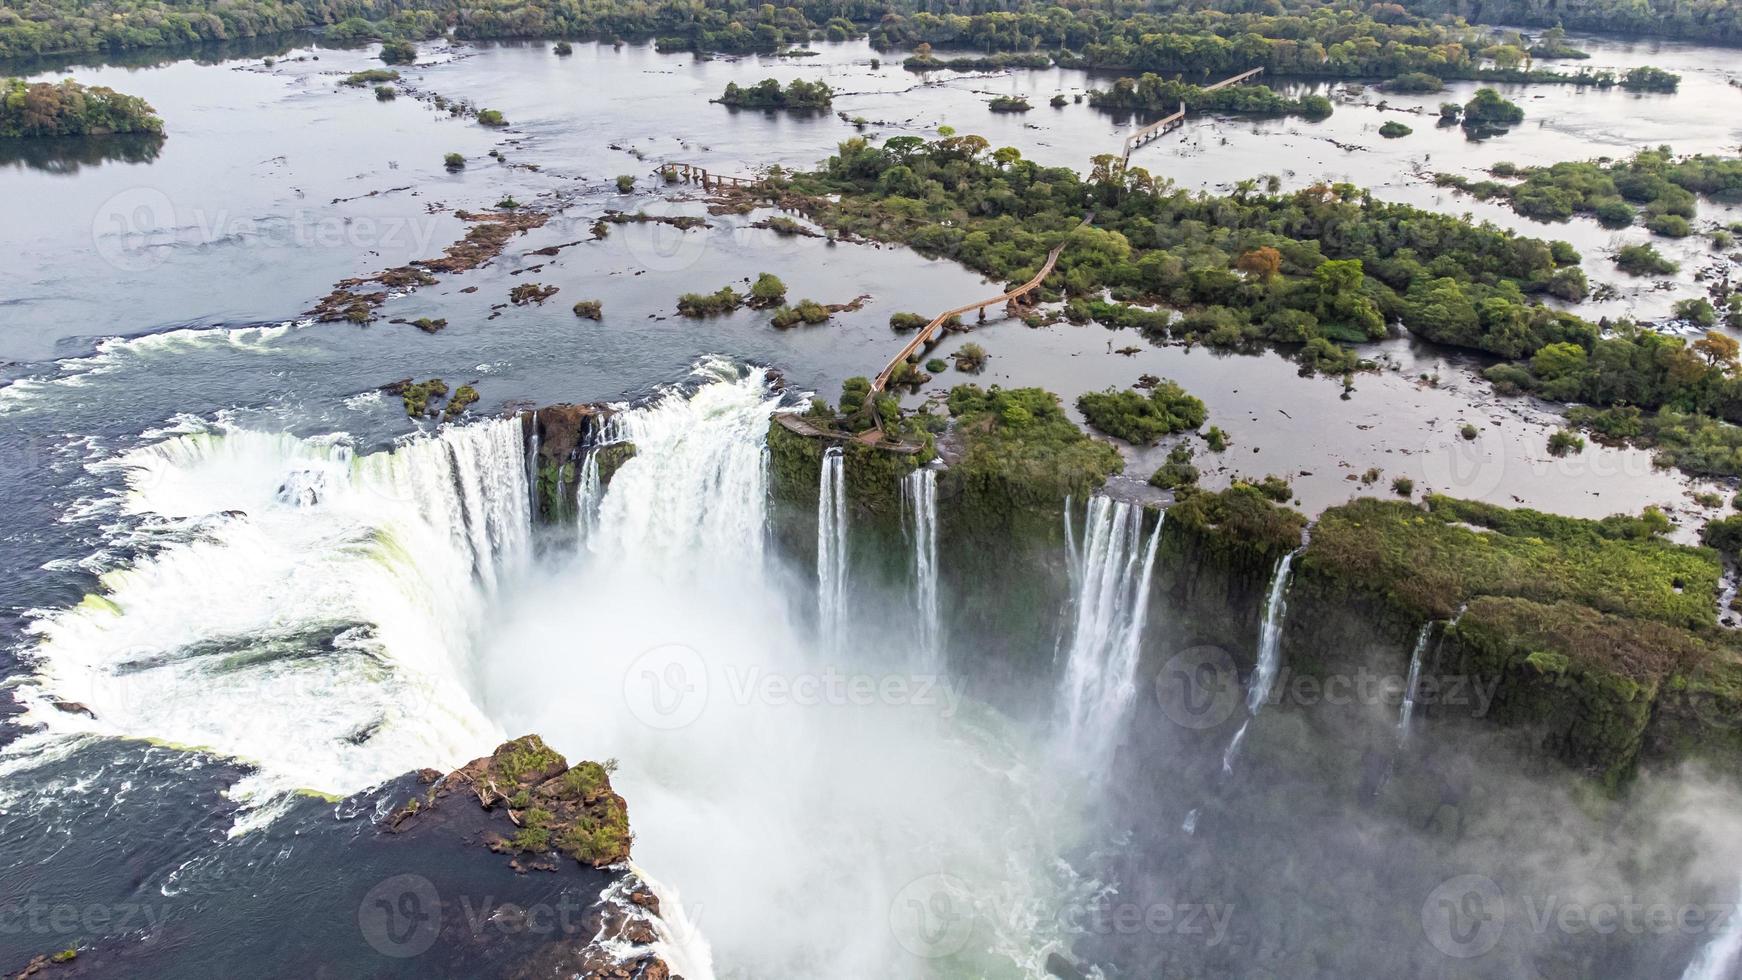 bela vista aérea das Cataratas do Iguaçu de um helicóptero, uma das sete maravilhas naturais do mundo. foz do iguaçu, parana, brasil foto